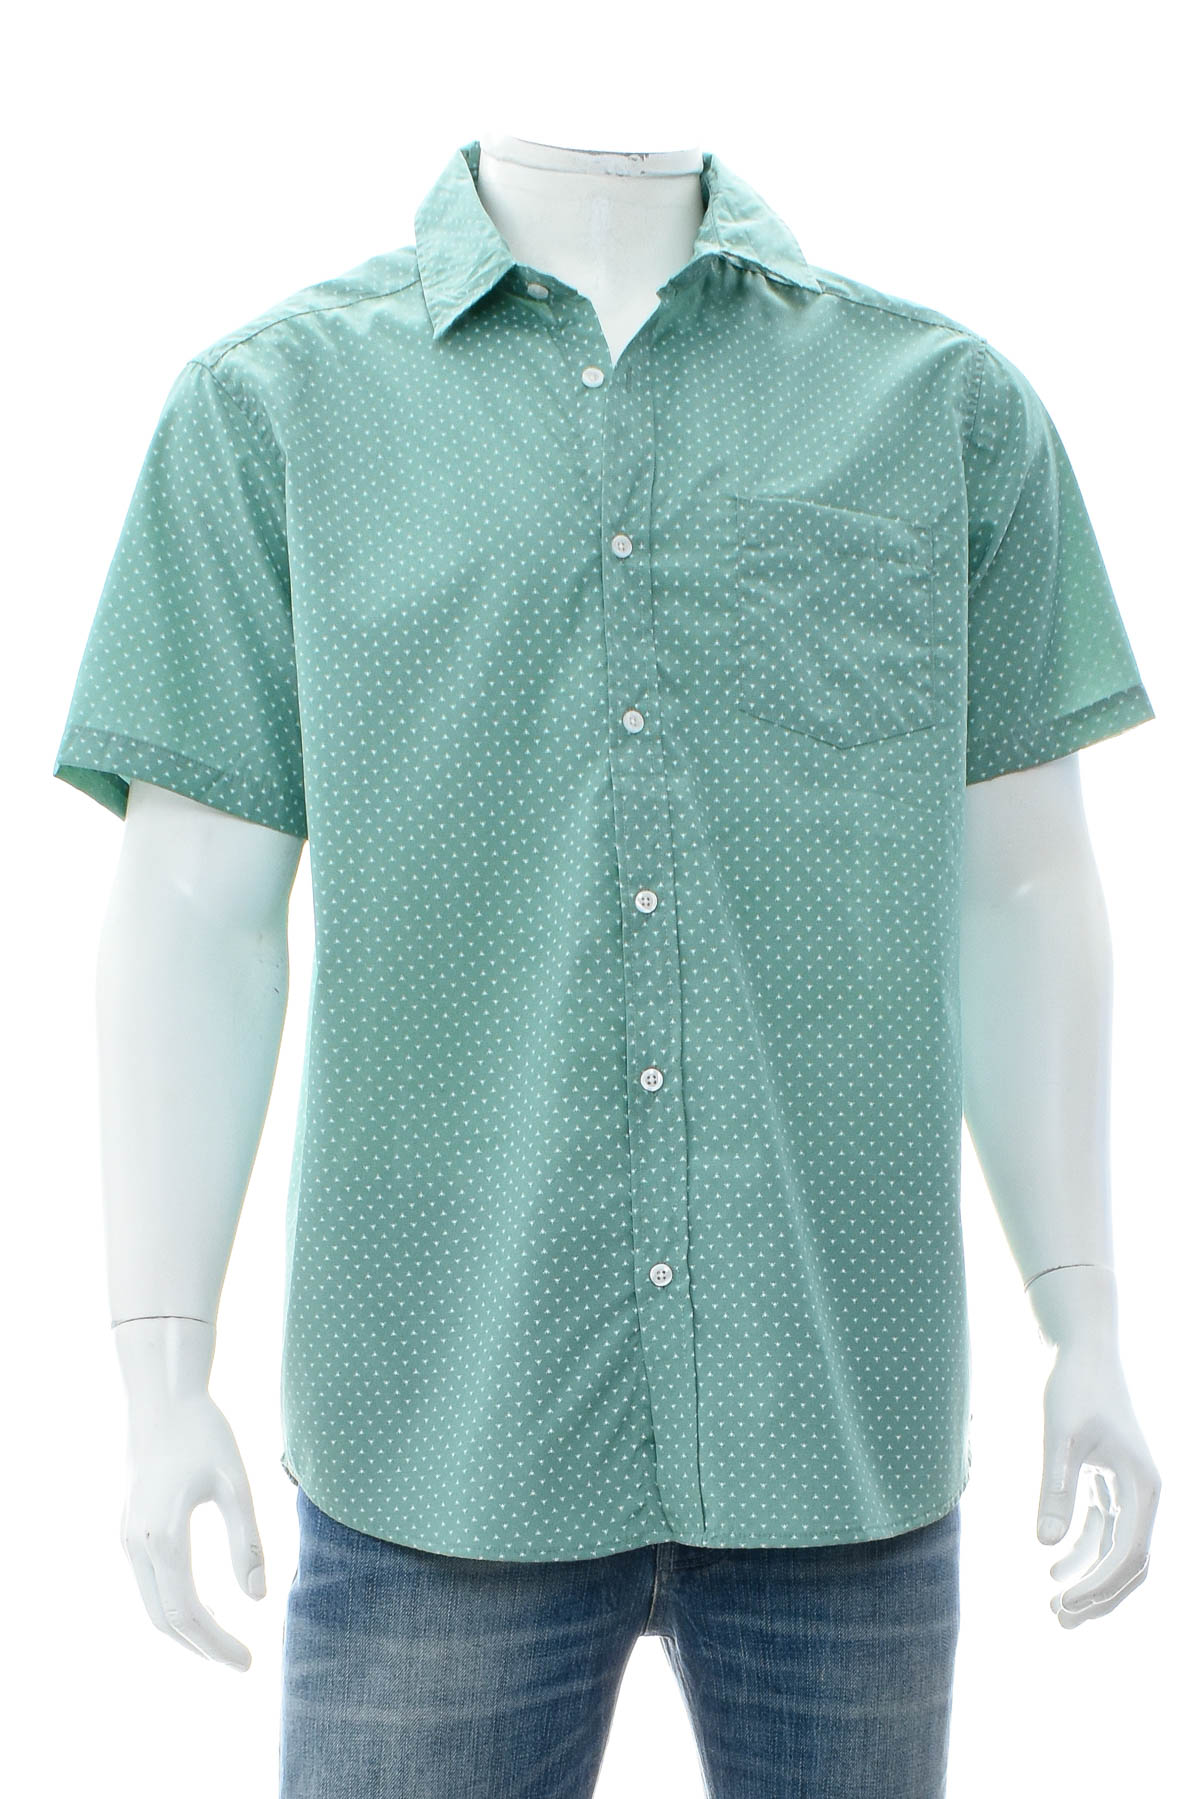 Ανδρικό πουκάμισο - Identic - 0